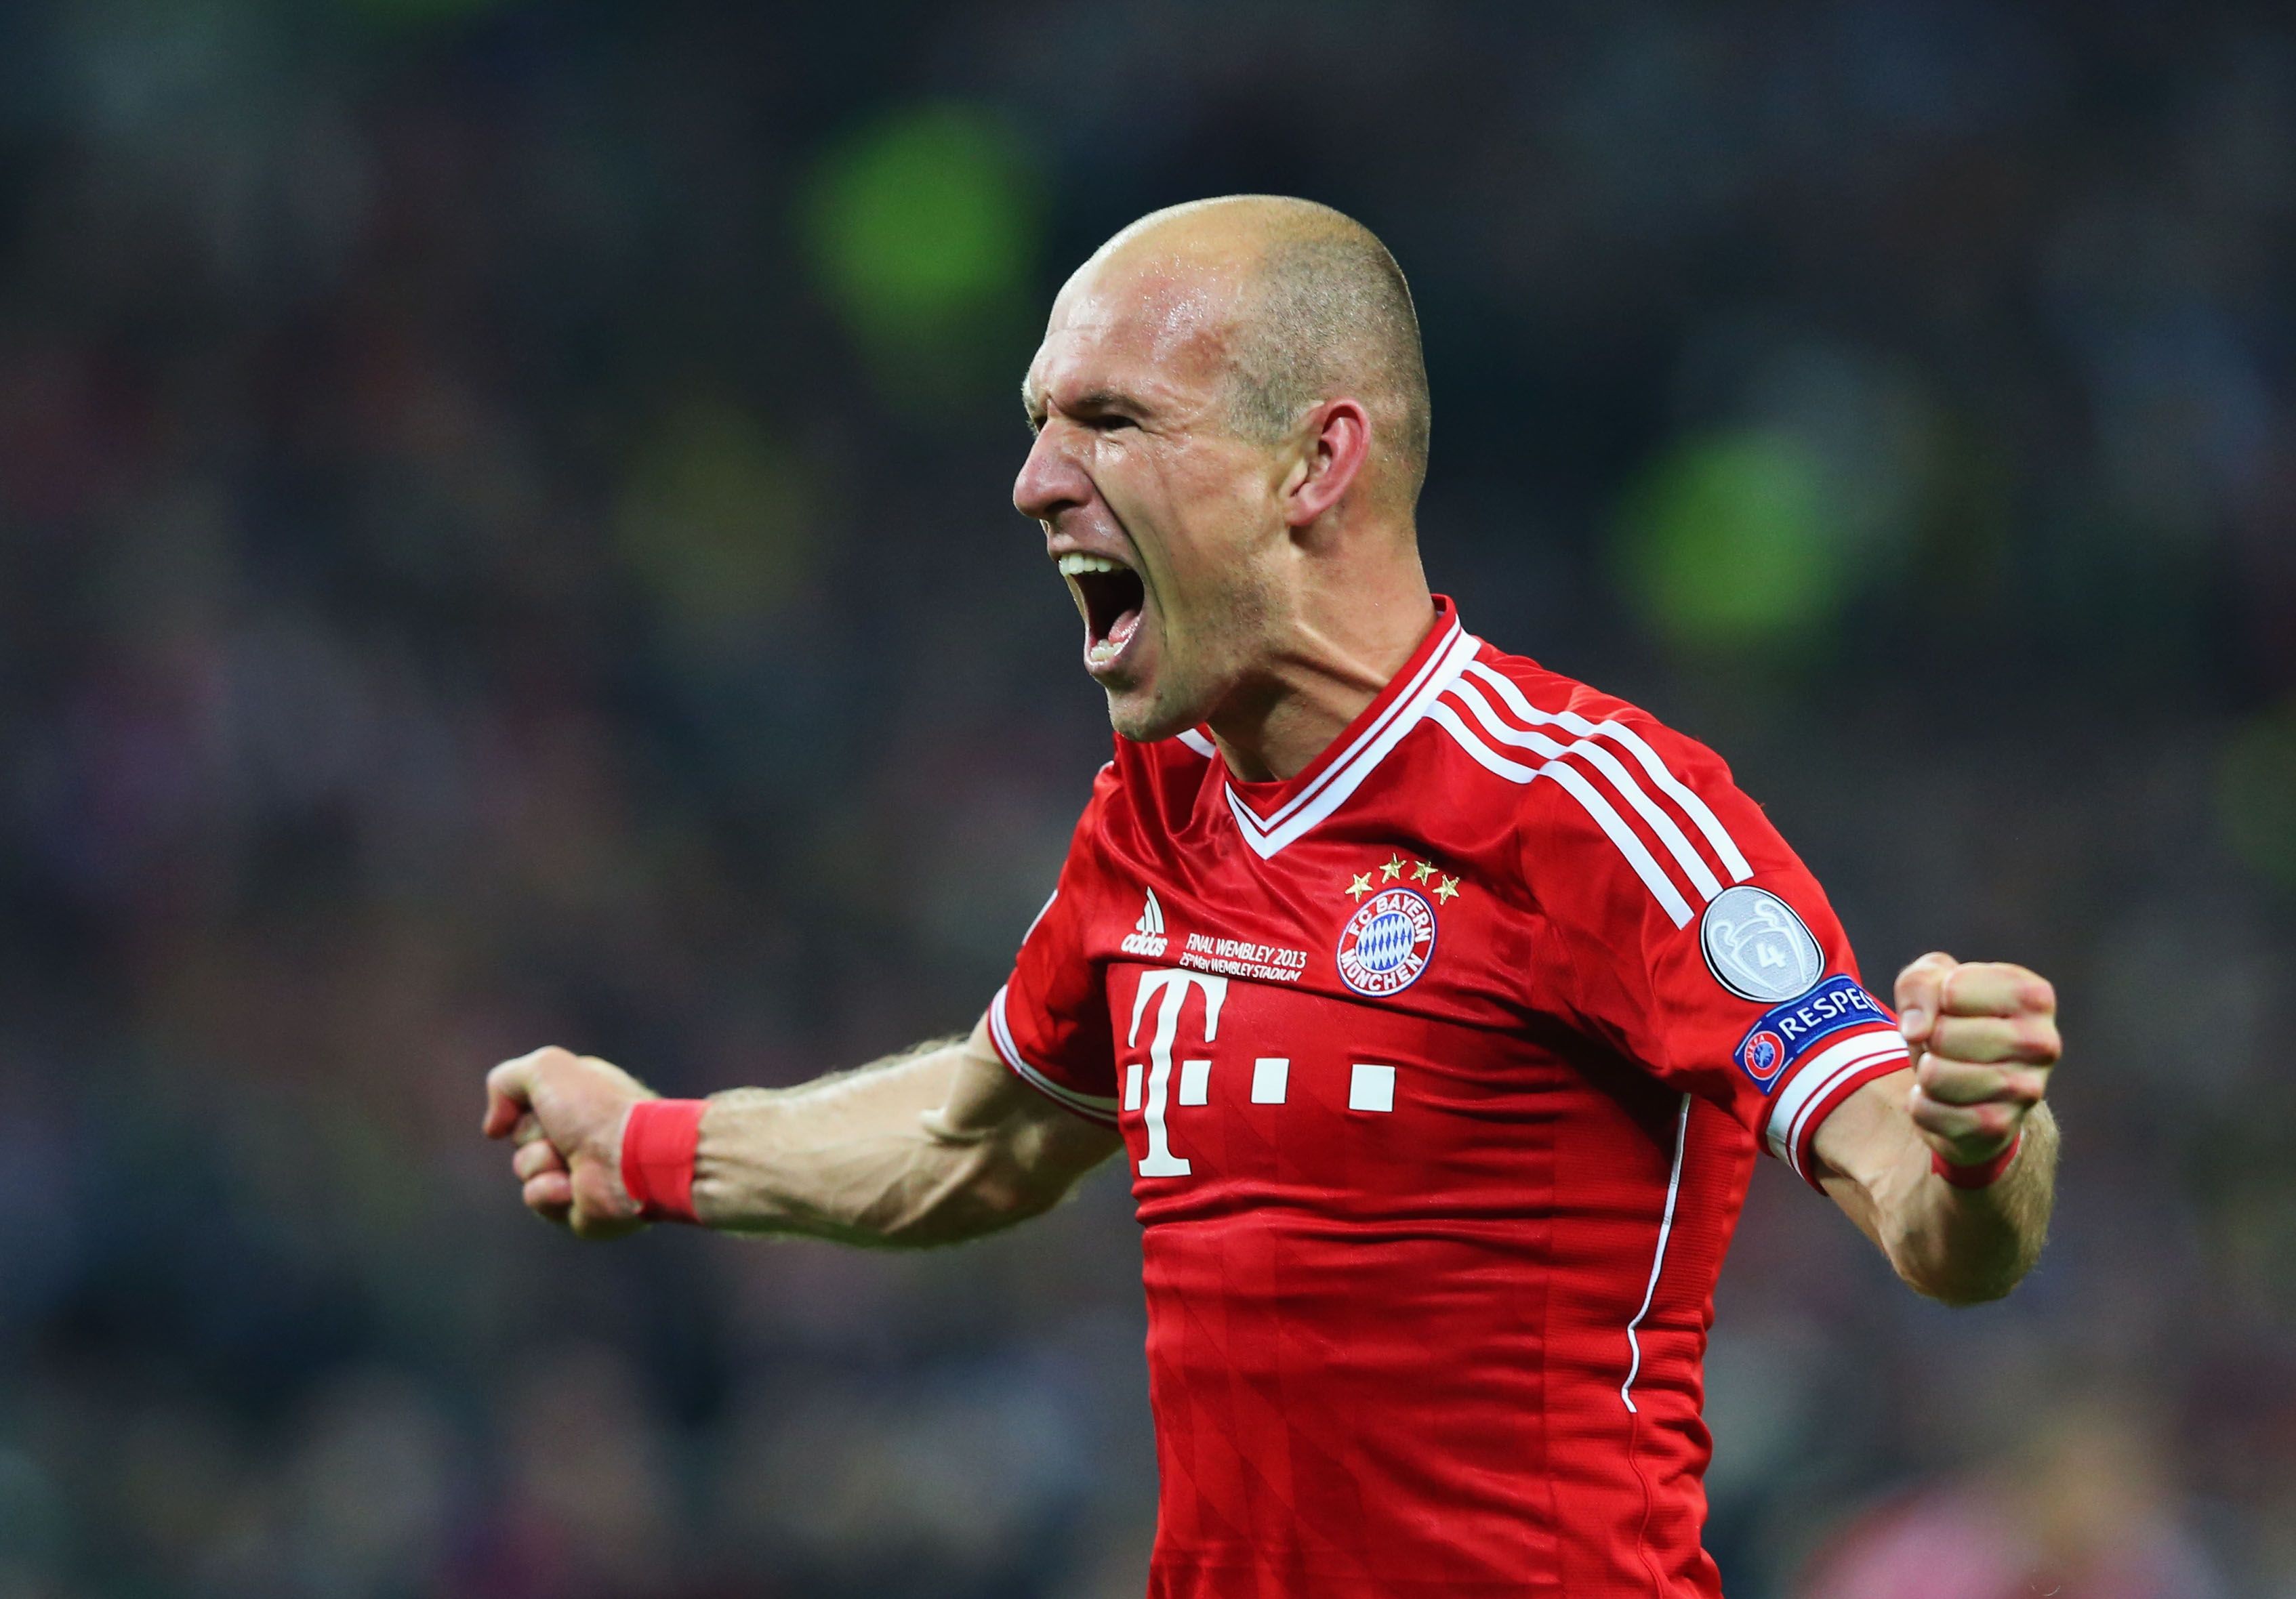 Robben was immense for Bayern Munich